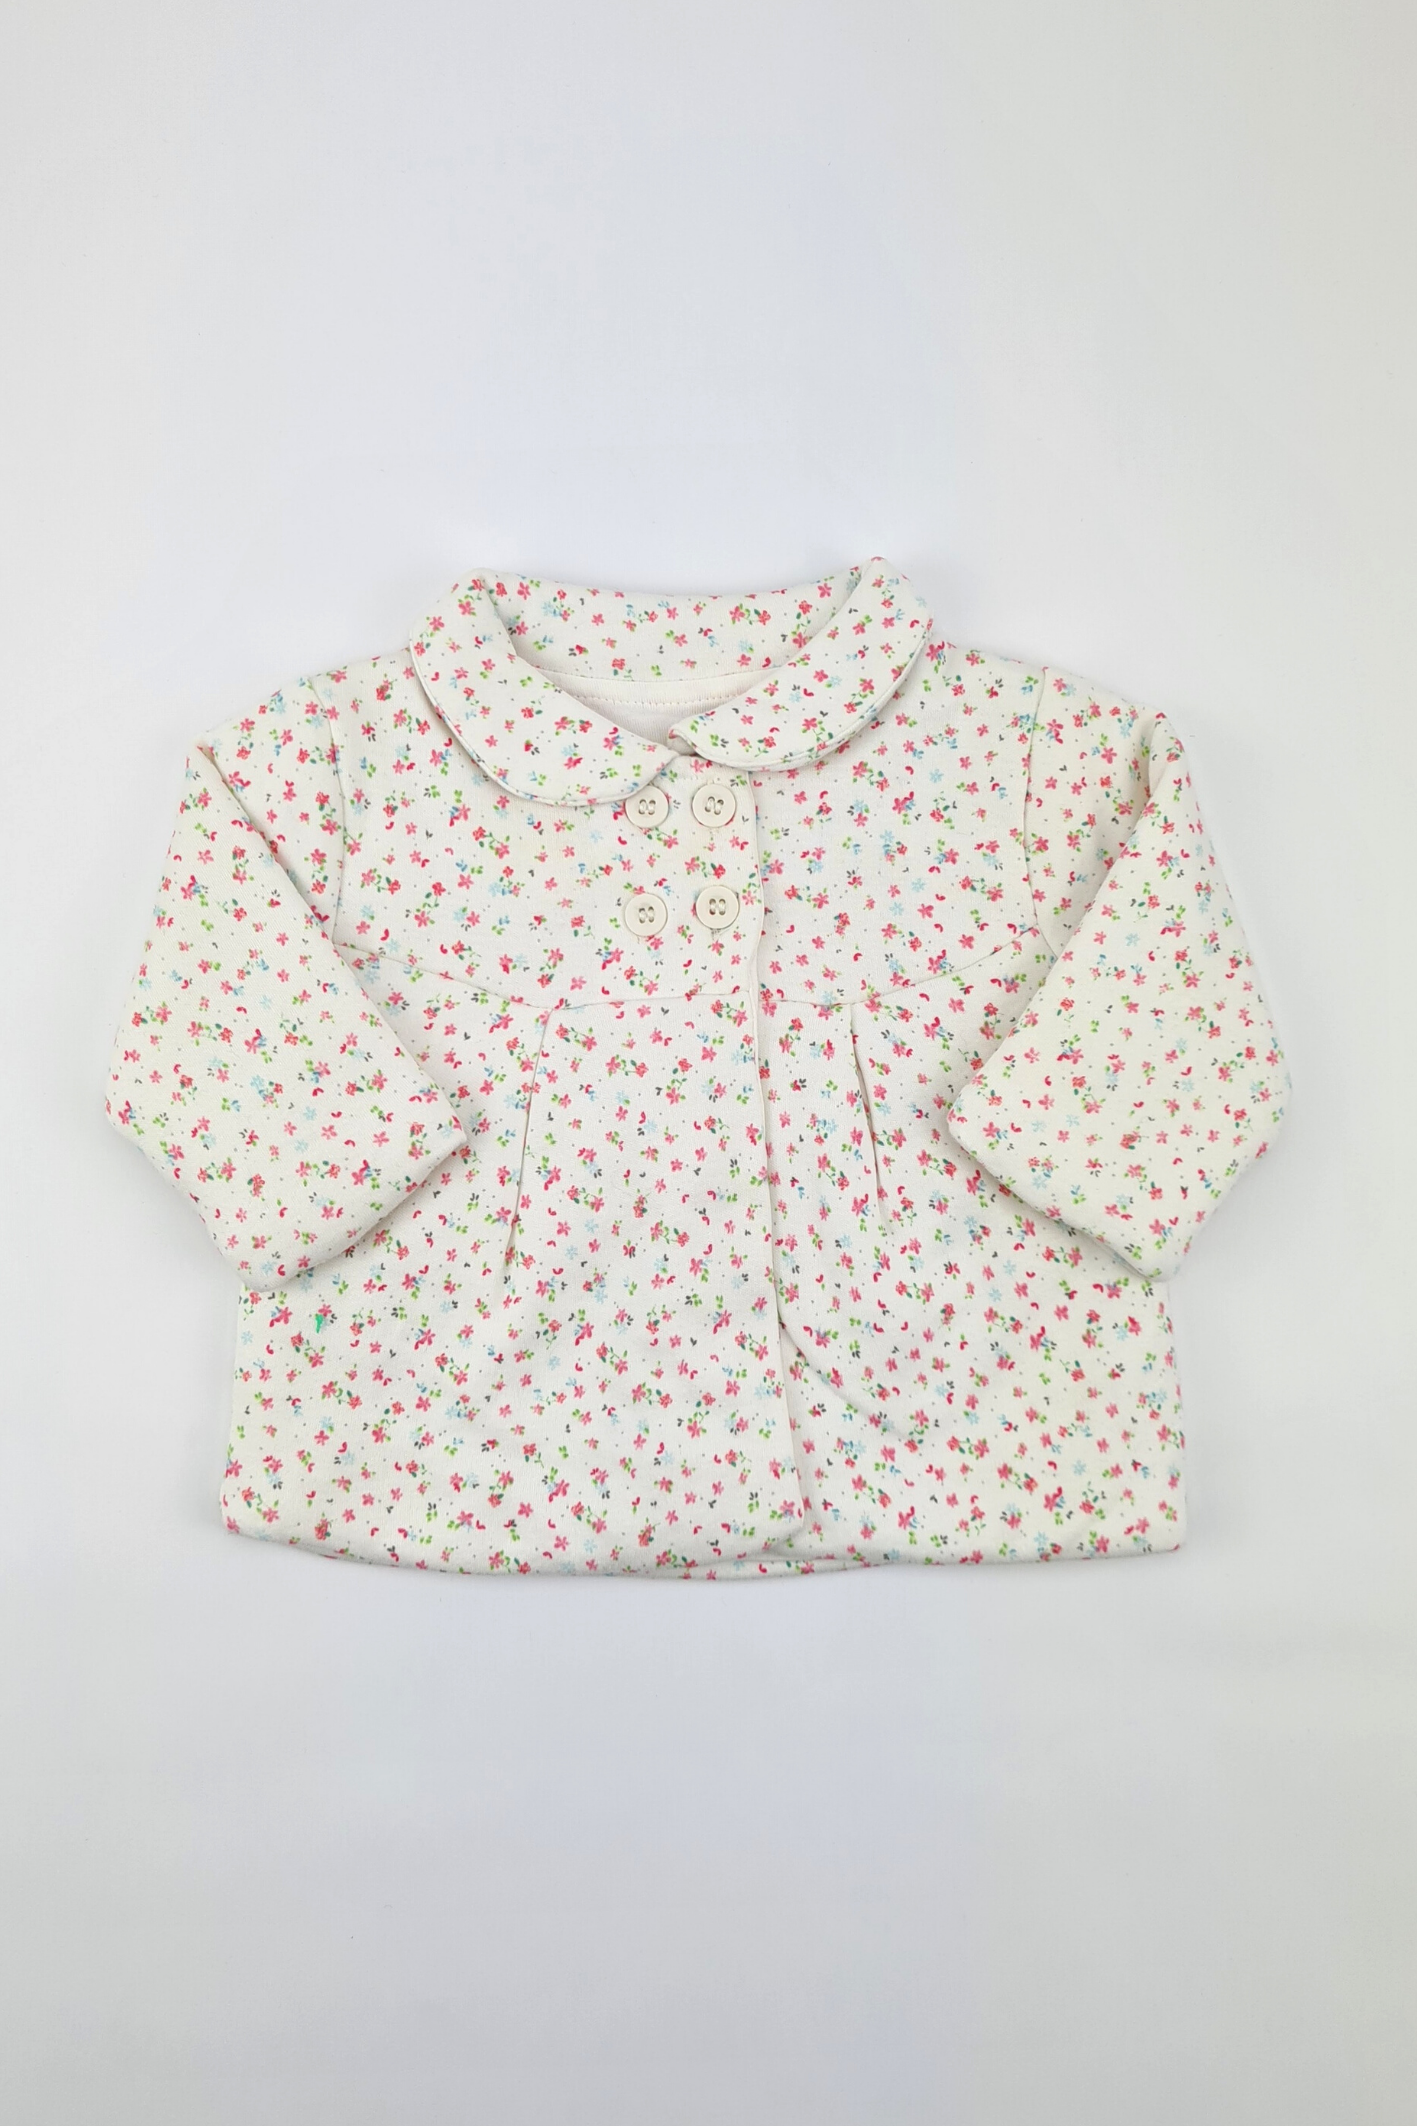 Neugeborenes – 4,5 kg schwerer Mantel mit Blumendruck (Mothercare)